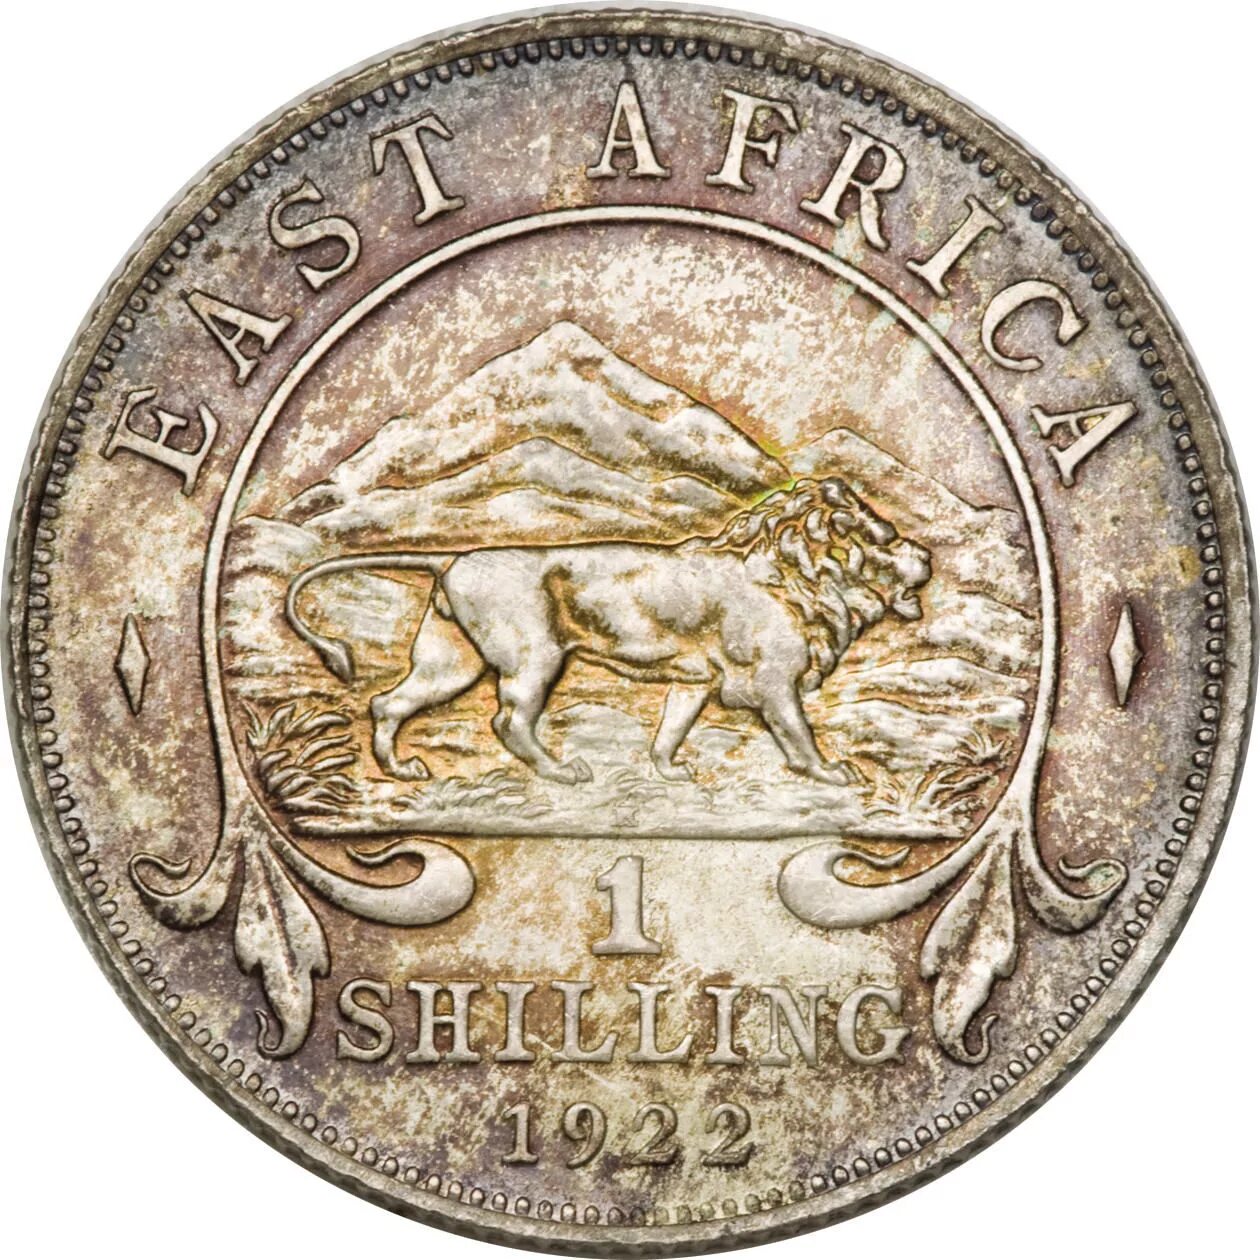 First coins. 1 Шиллинг Восточная Африка. Монета 1 шиллинг. Монеты британской Восточной Африки. Древние монеты Африки.